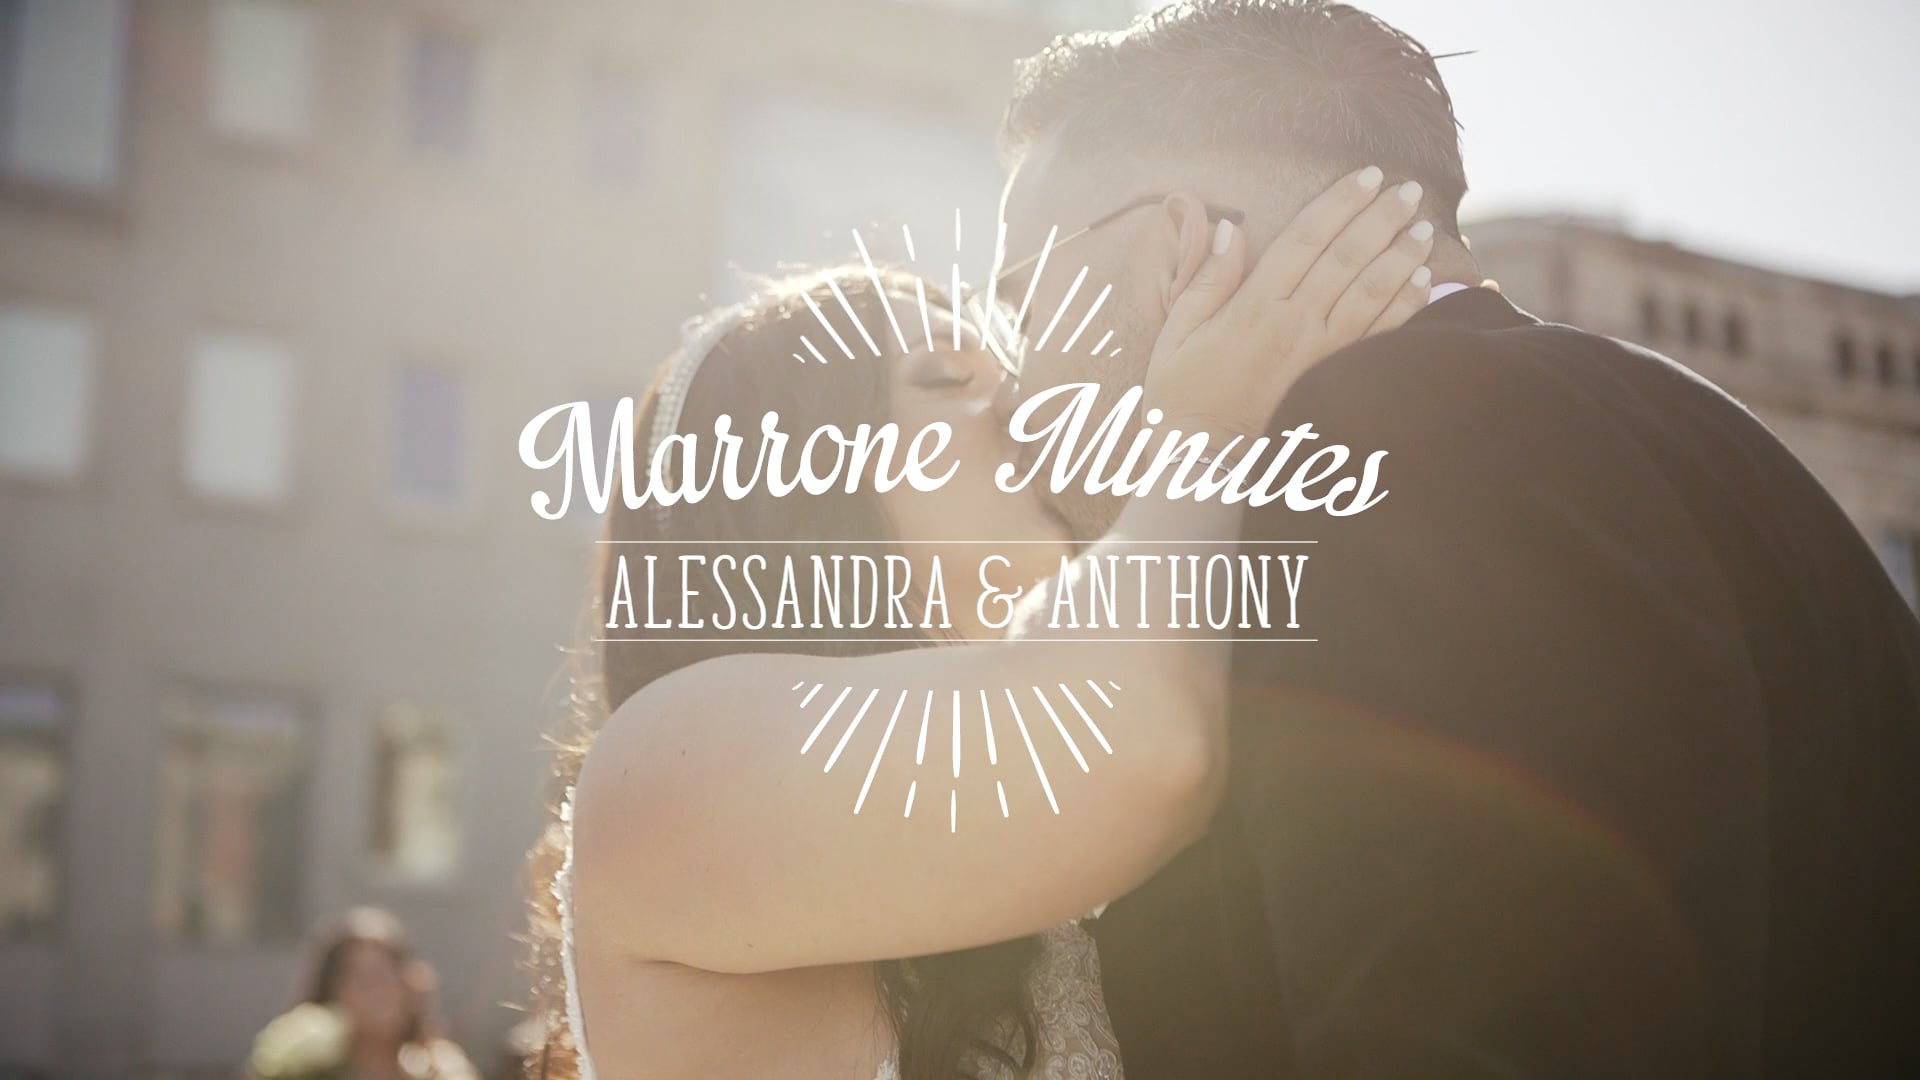 Alessandra & Anthony {Marrone Minute}